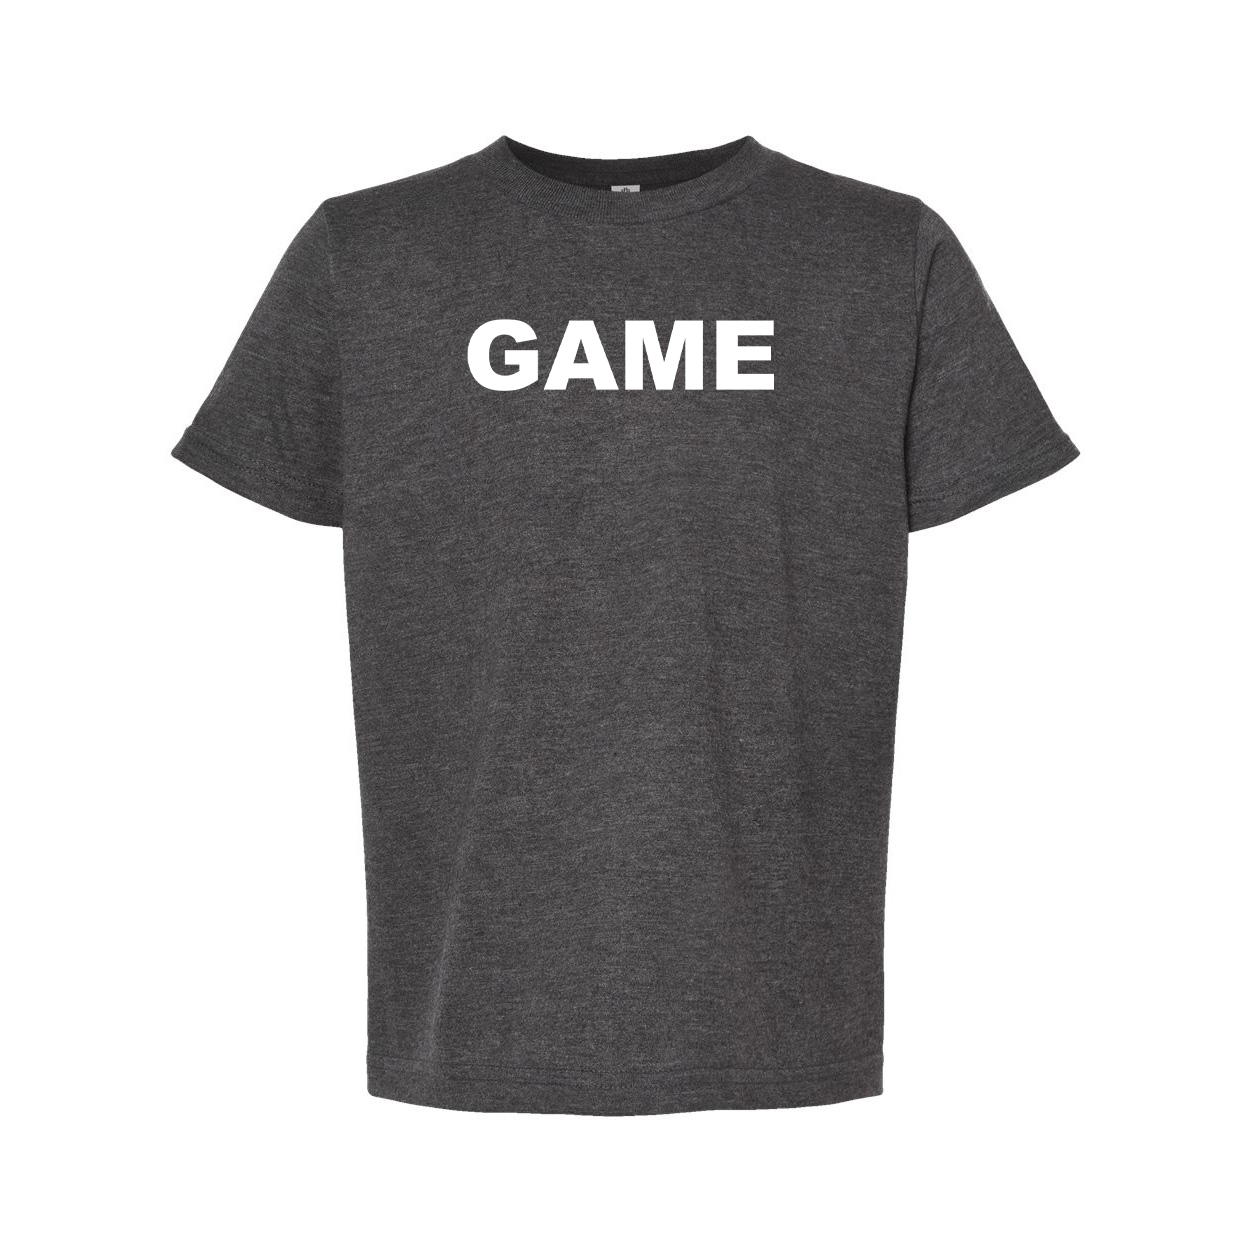 Game Brand Logo Classic Youth T-Shirt Dark Heather Gray